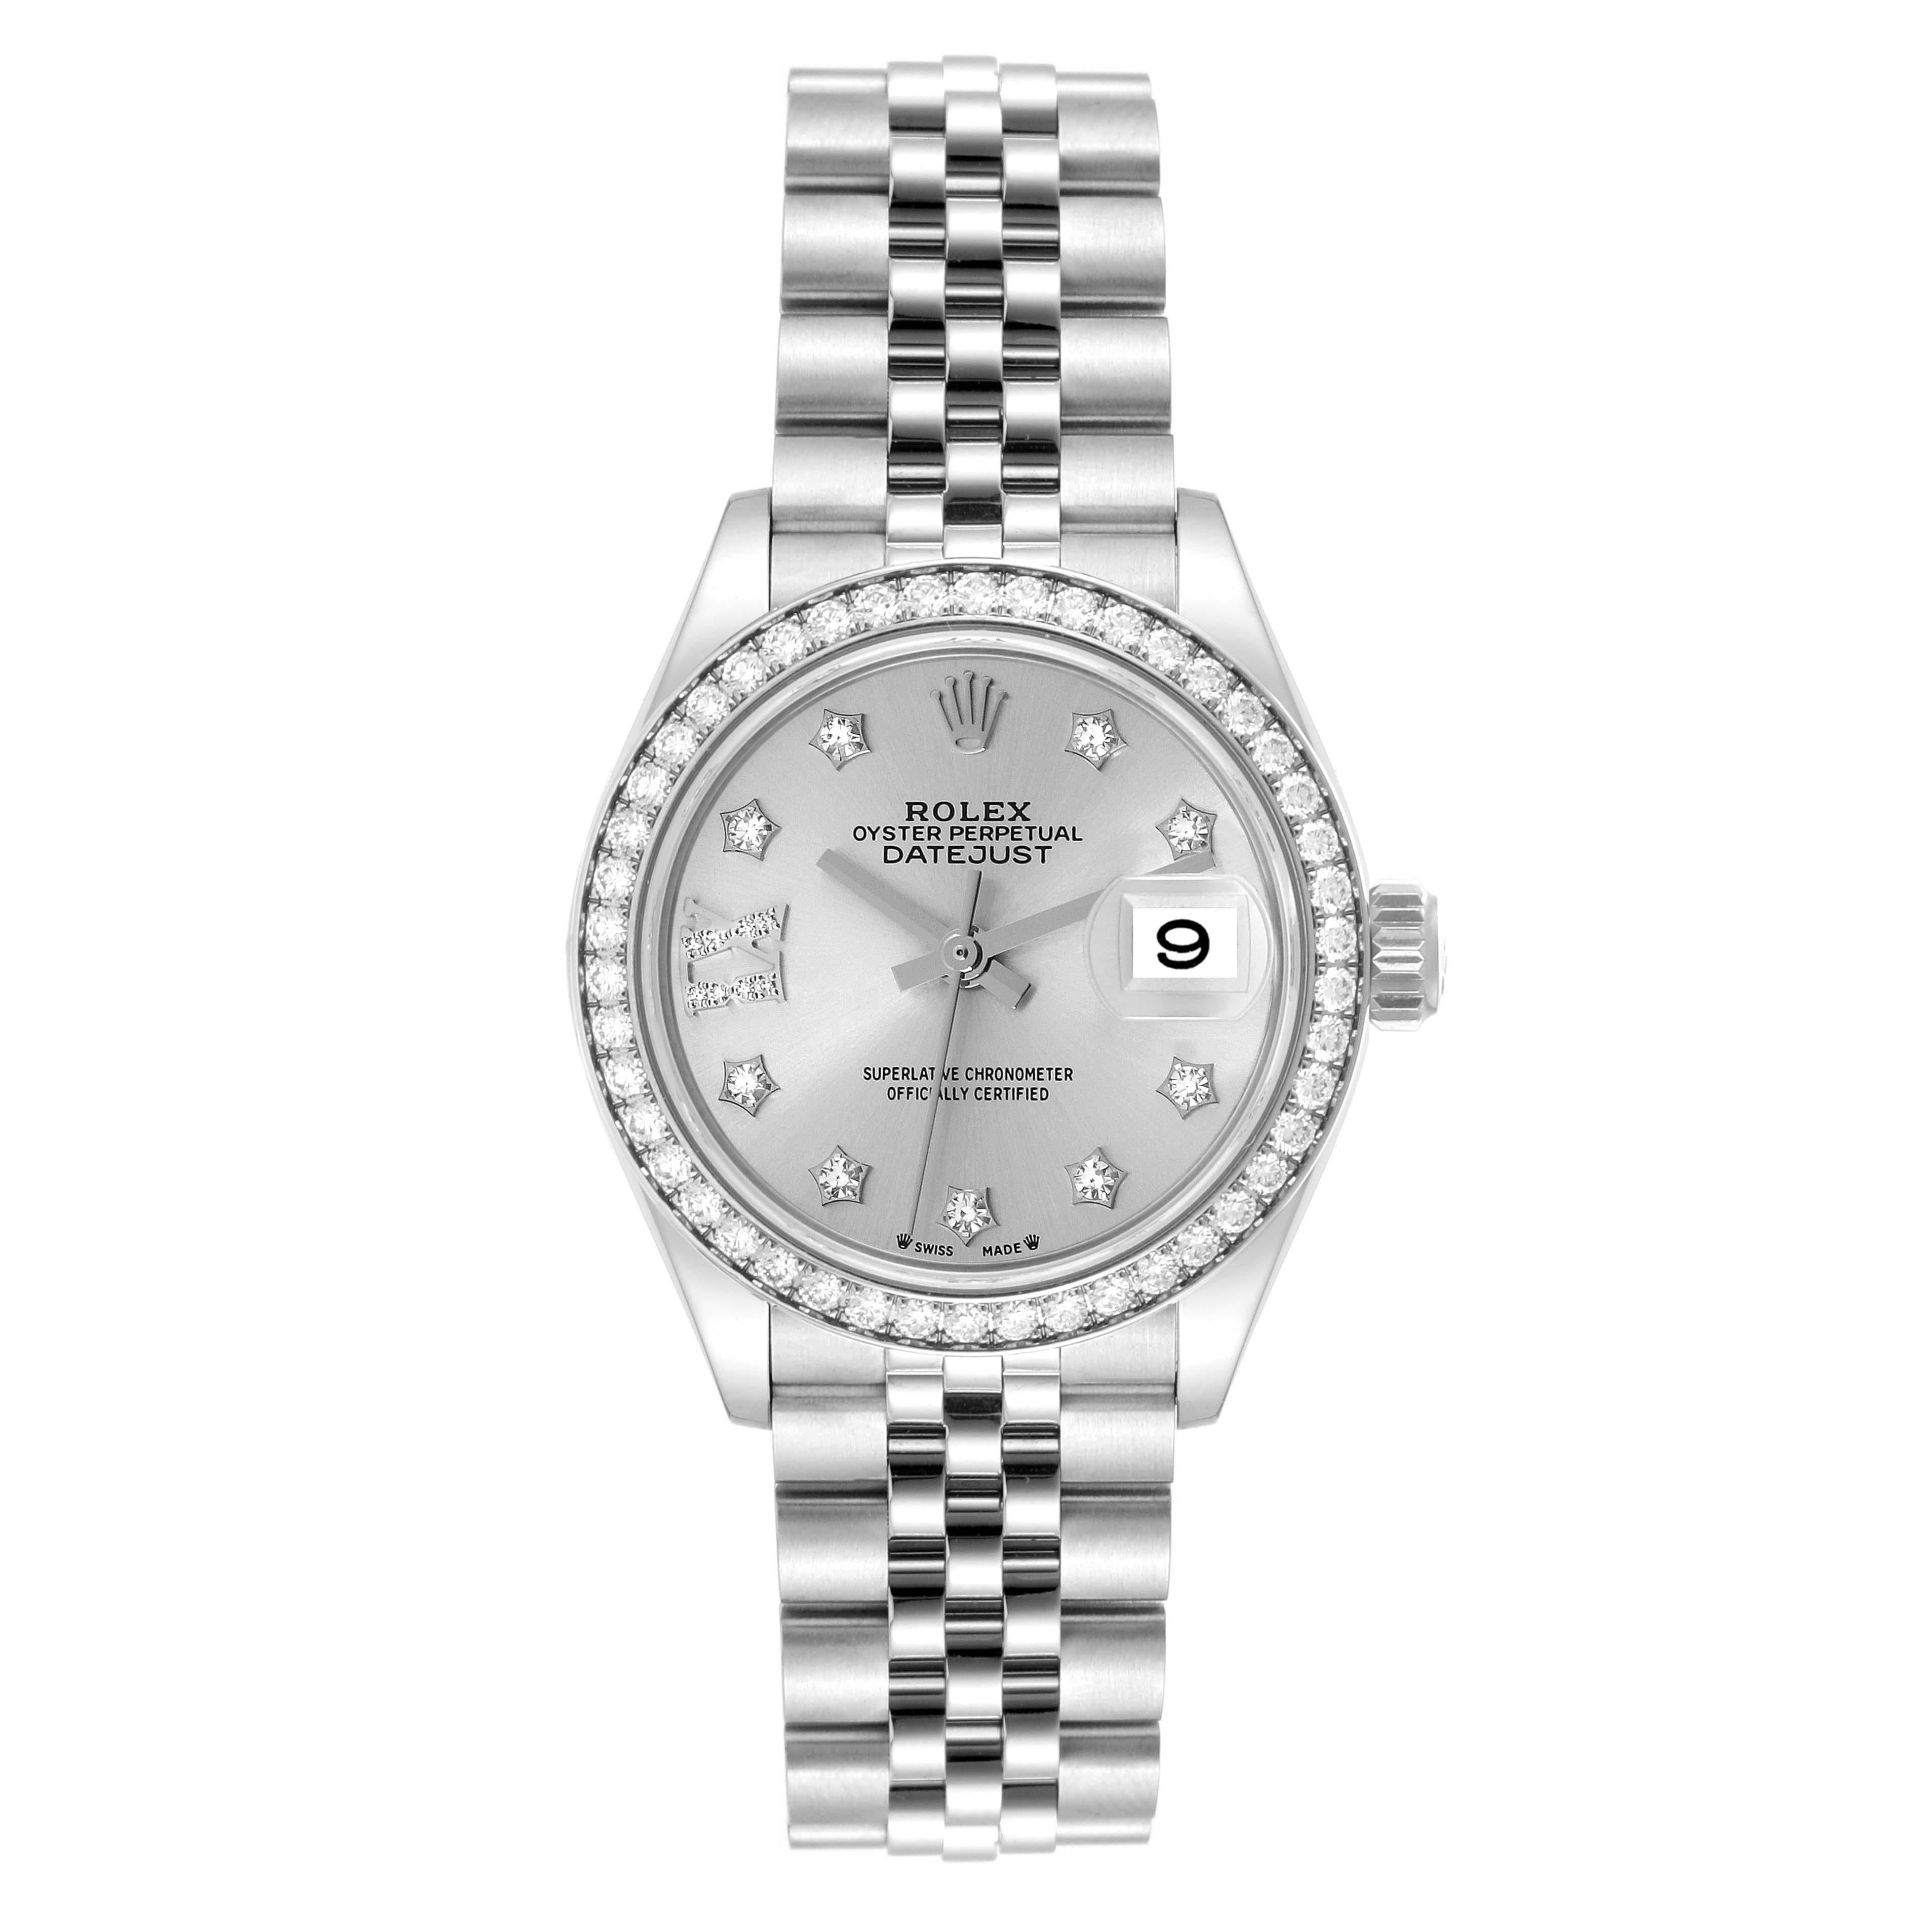 Rolex Datejust Steel White Gold Silver Dial Diamond Ladies Watch 279384. Mouvement automatique à remontage automatique, officiellement certifié chronomètre. Boîtier oyster en acier inoxydable de 28.0 mm de diamètre. Logo Rolex sur une couronne.